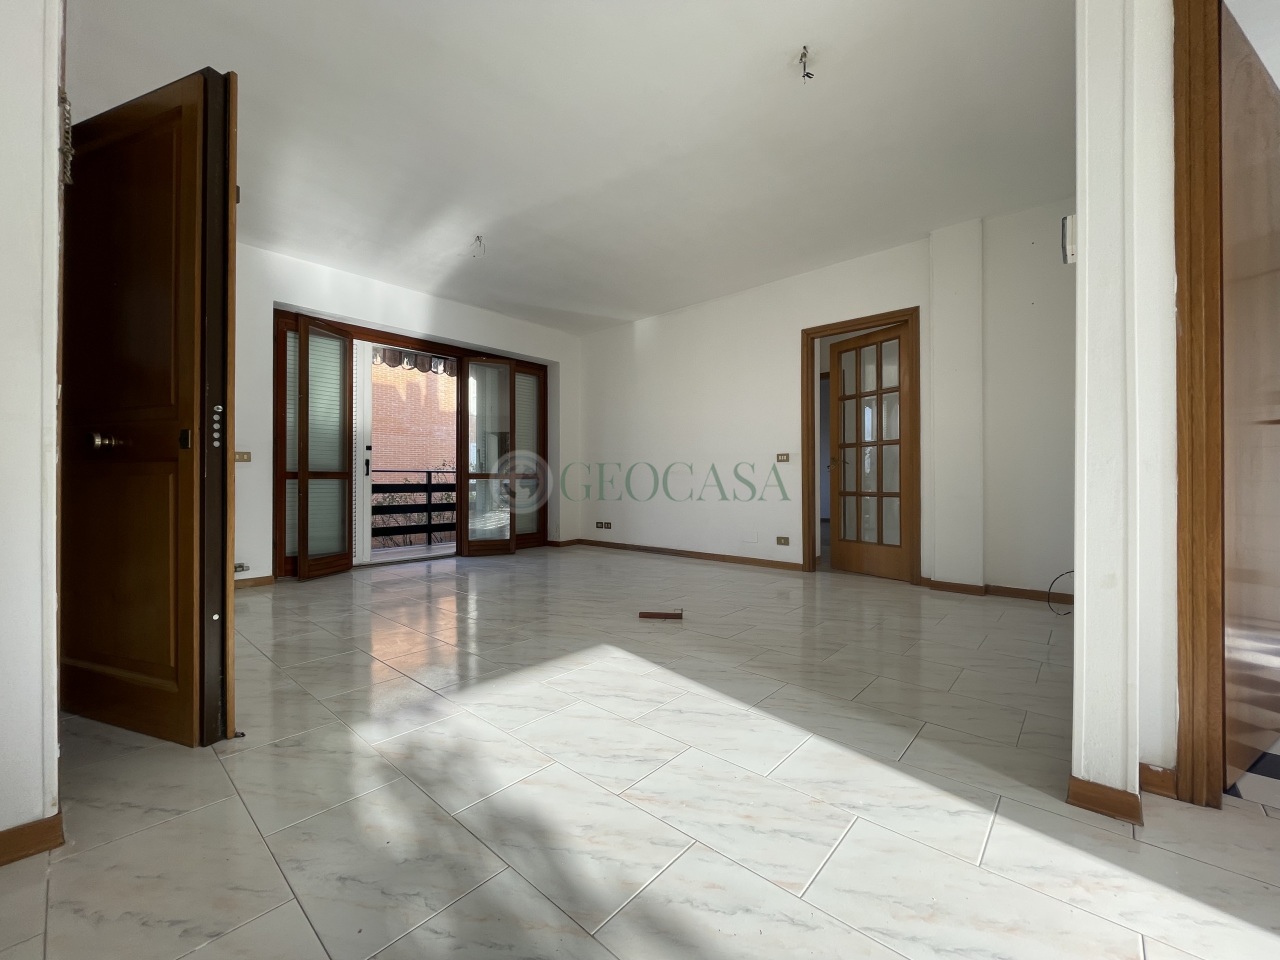 Appartamento in vendita a Sarzana, 8 locali, prezzo € 280.000 | PortaleAgenzieImmobiliari.it